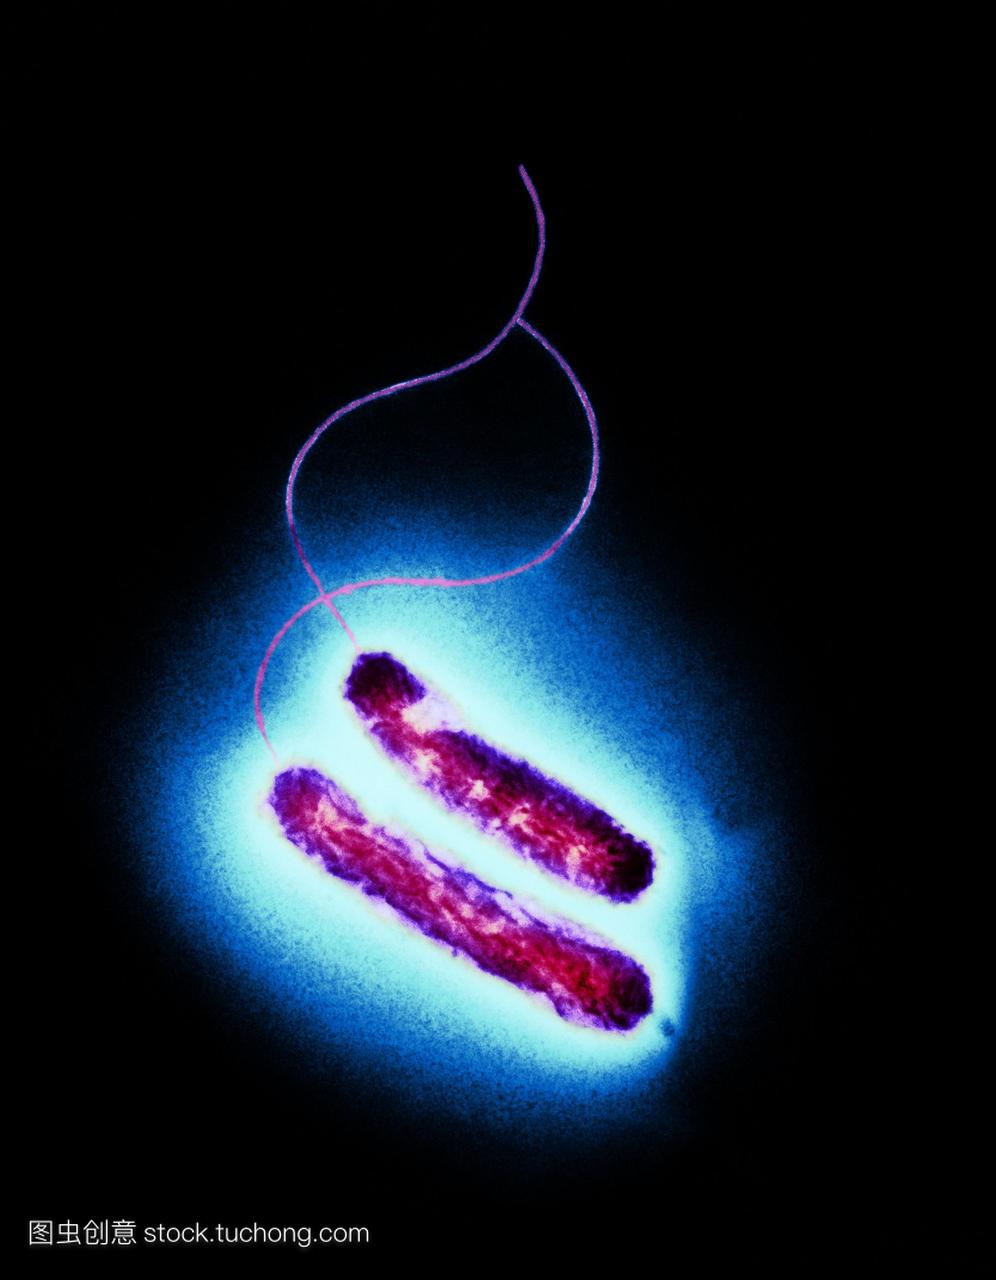 弯曲杆菌的细菌。彩色透射电子显微镜TEM两